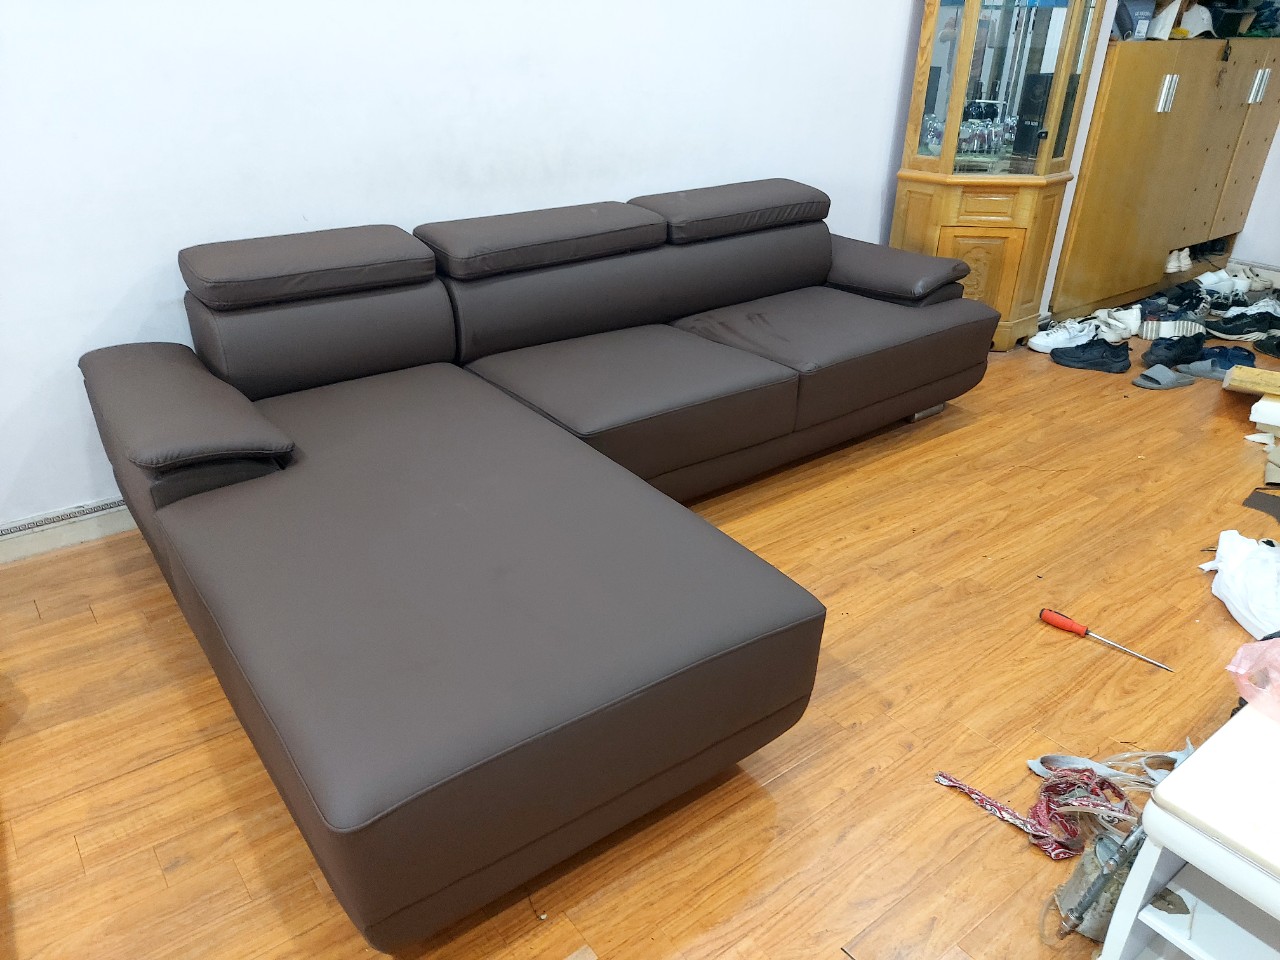 Giá dịch vụ bọc nệm ghế sofa